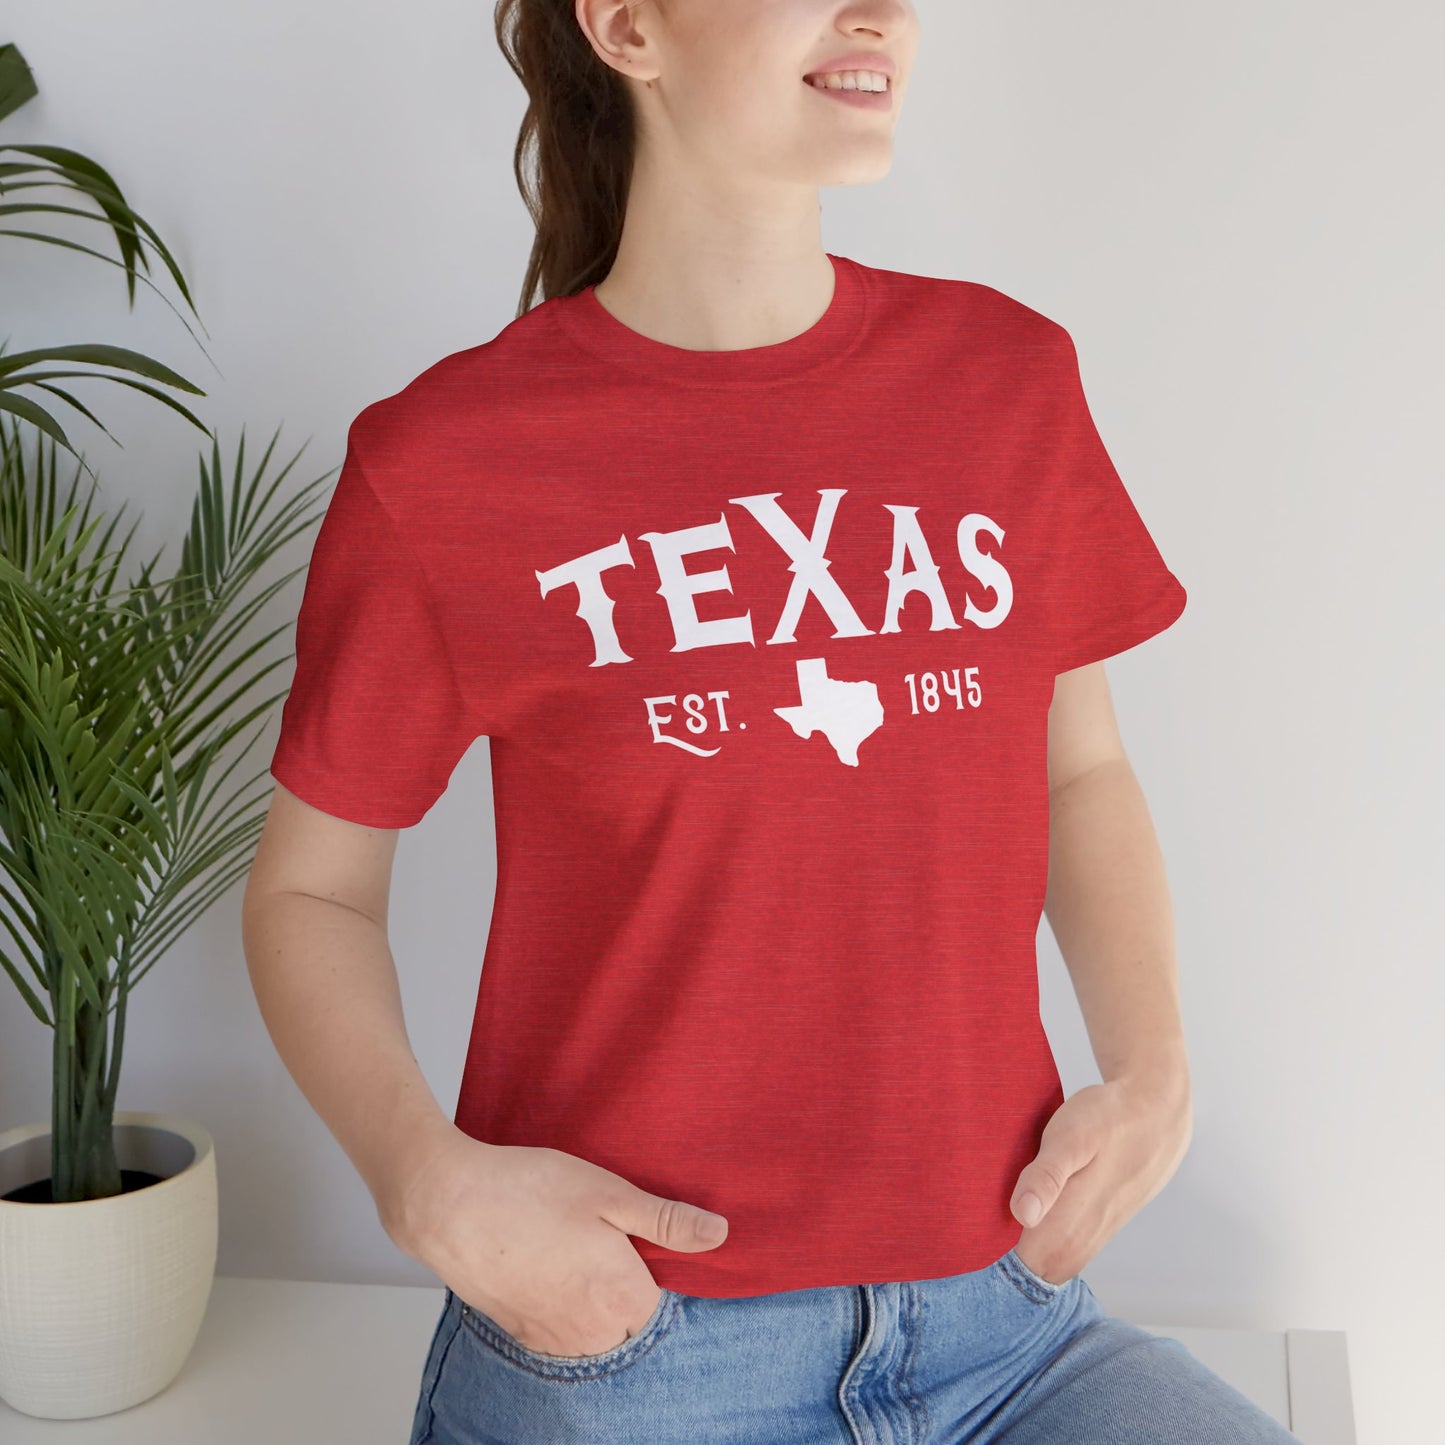 Camiseta unisex Texas EST